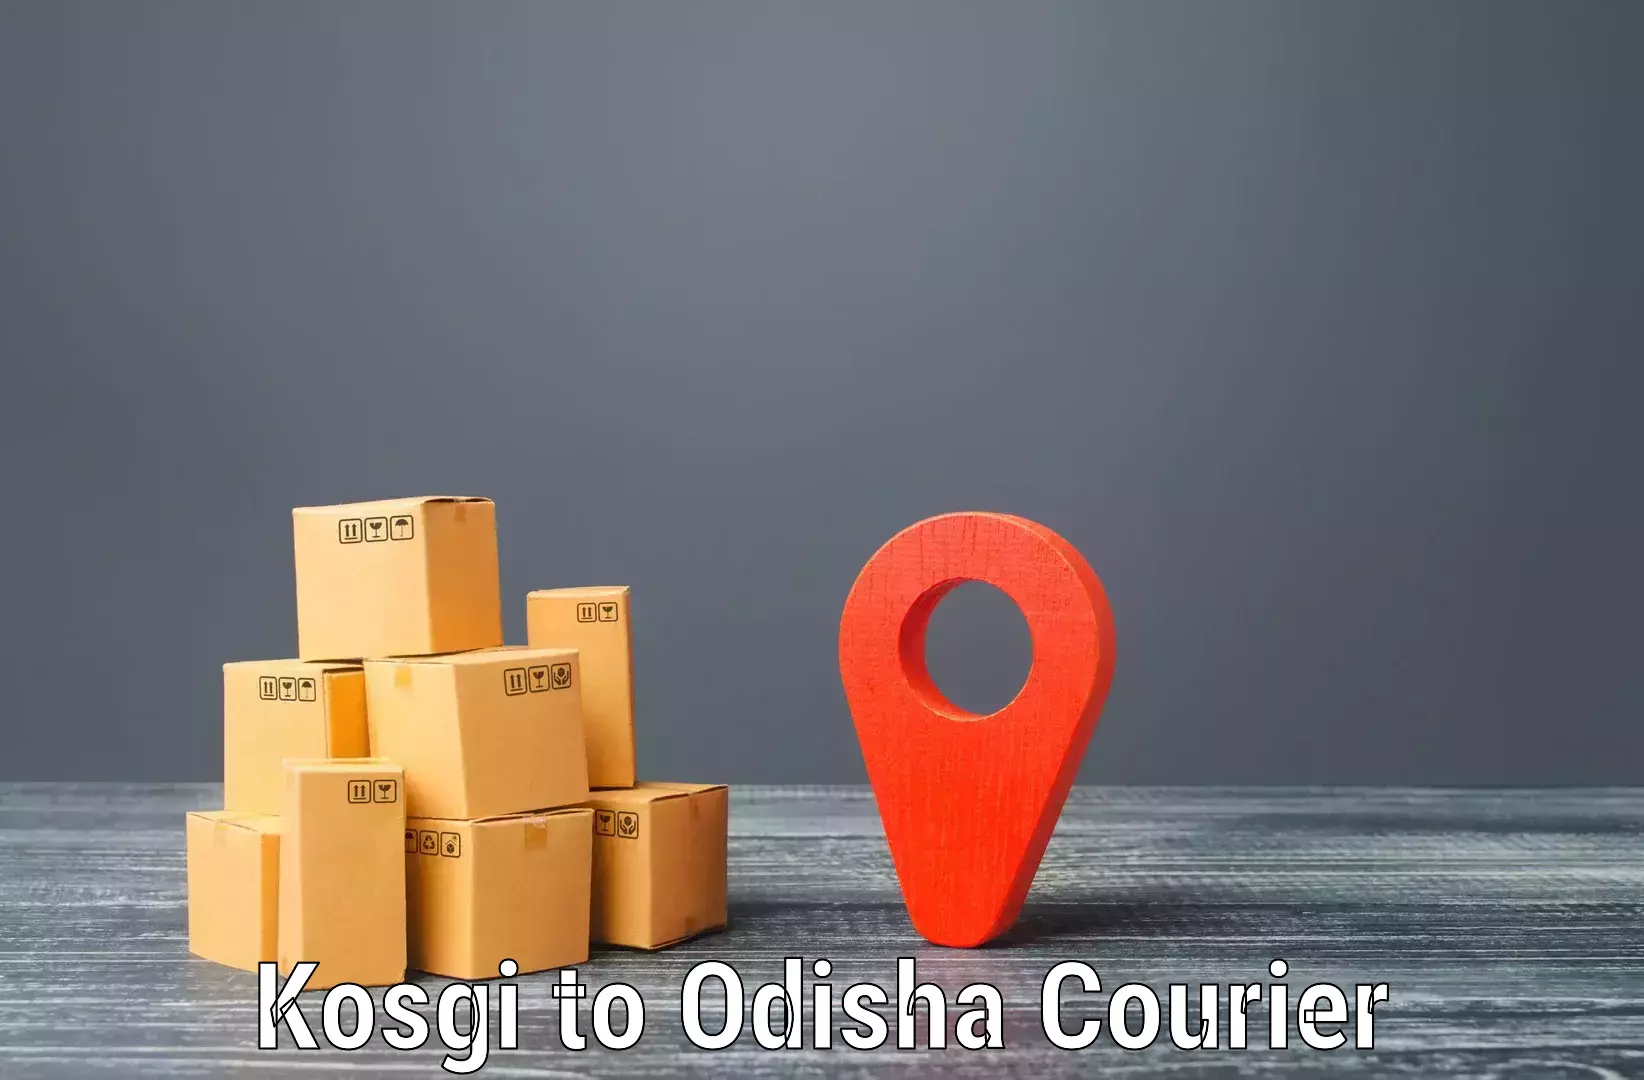 Express mail service Kosgi to Mohana